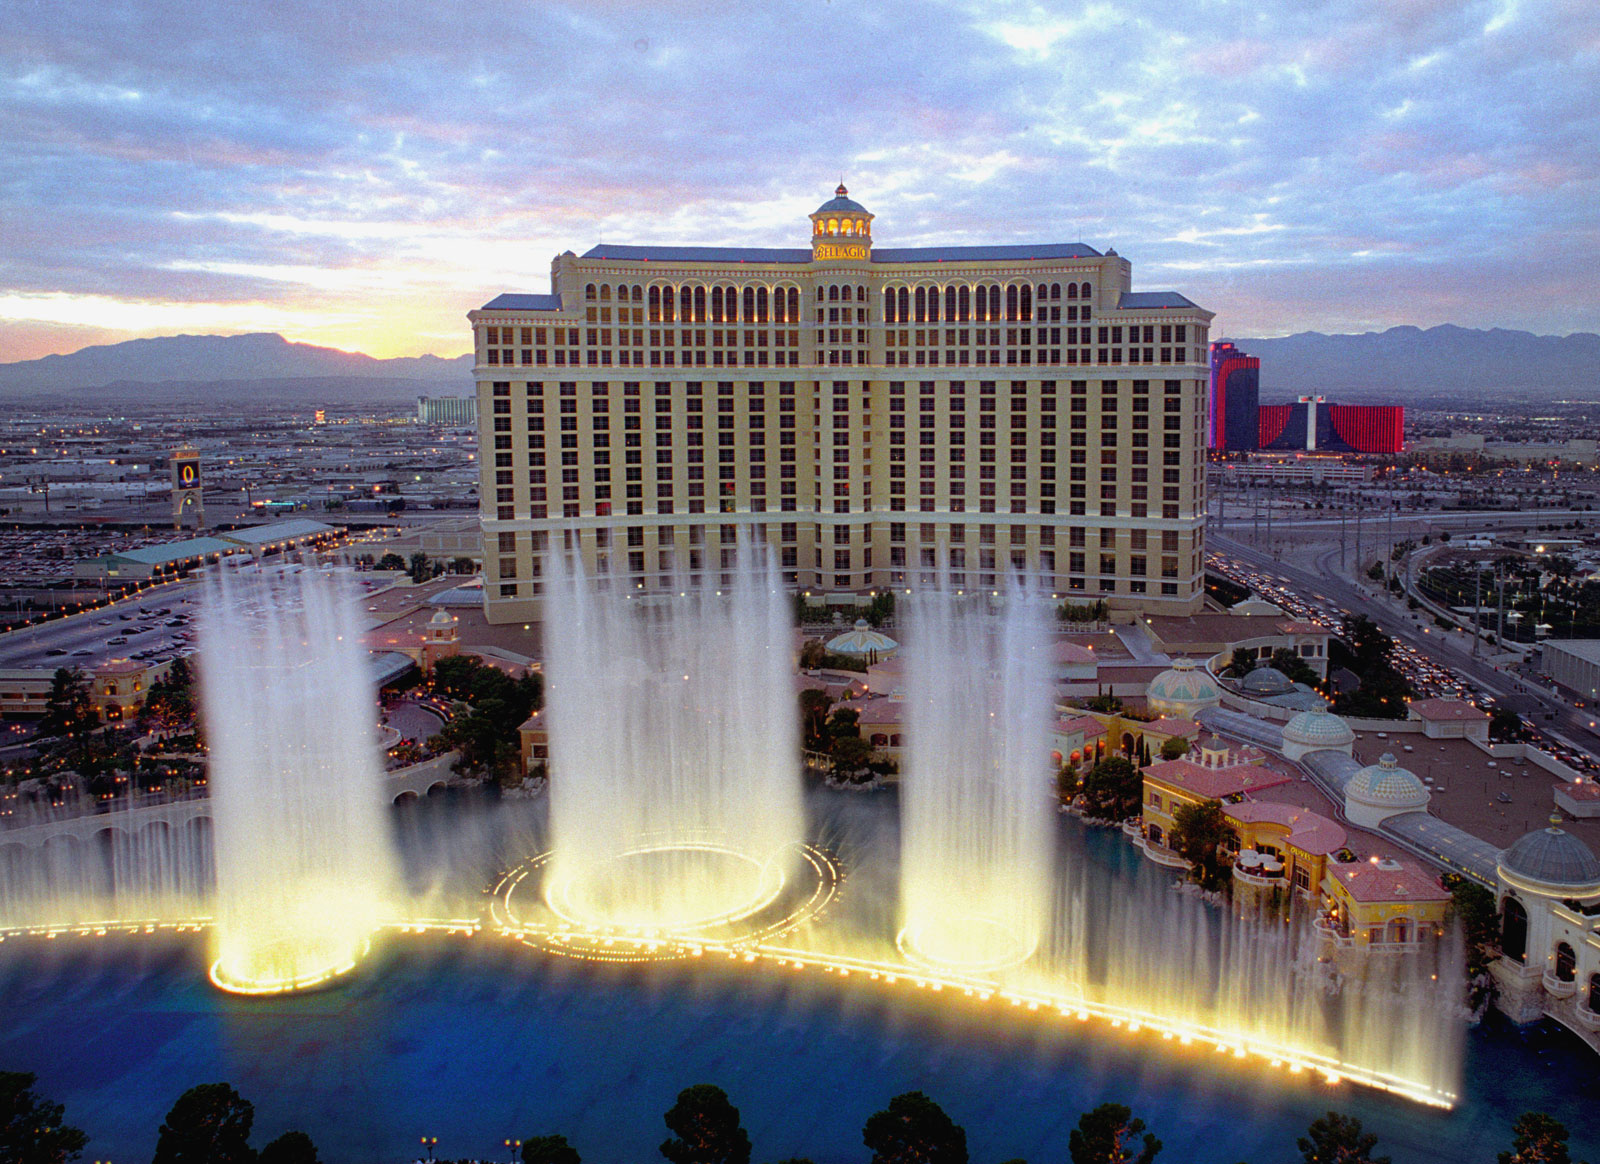 Bellagio Hotel In Vegas